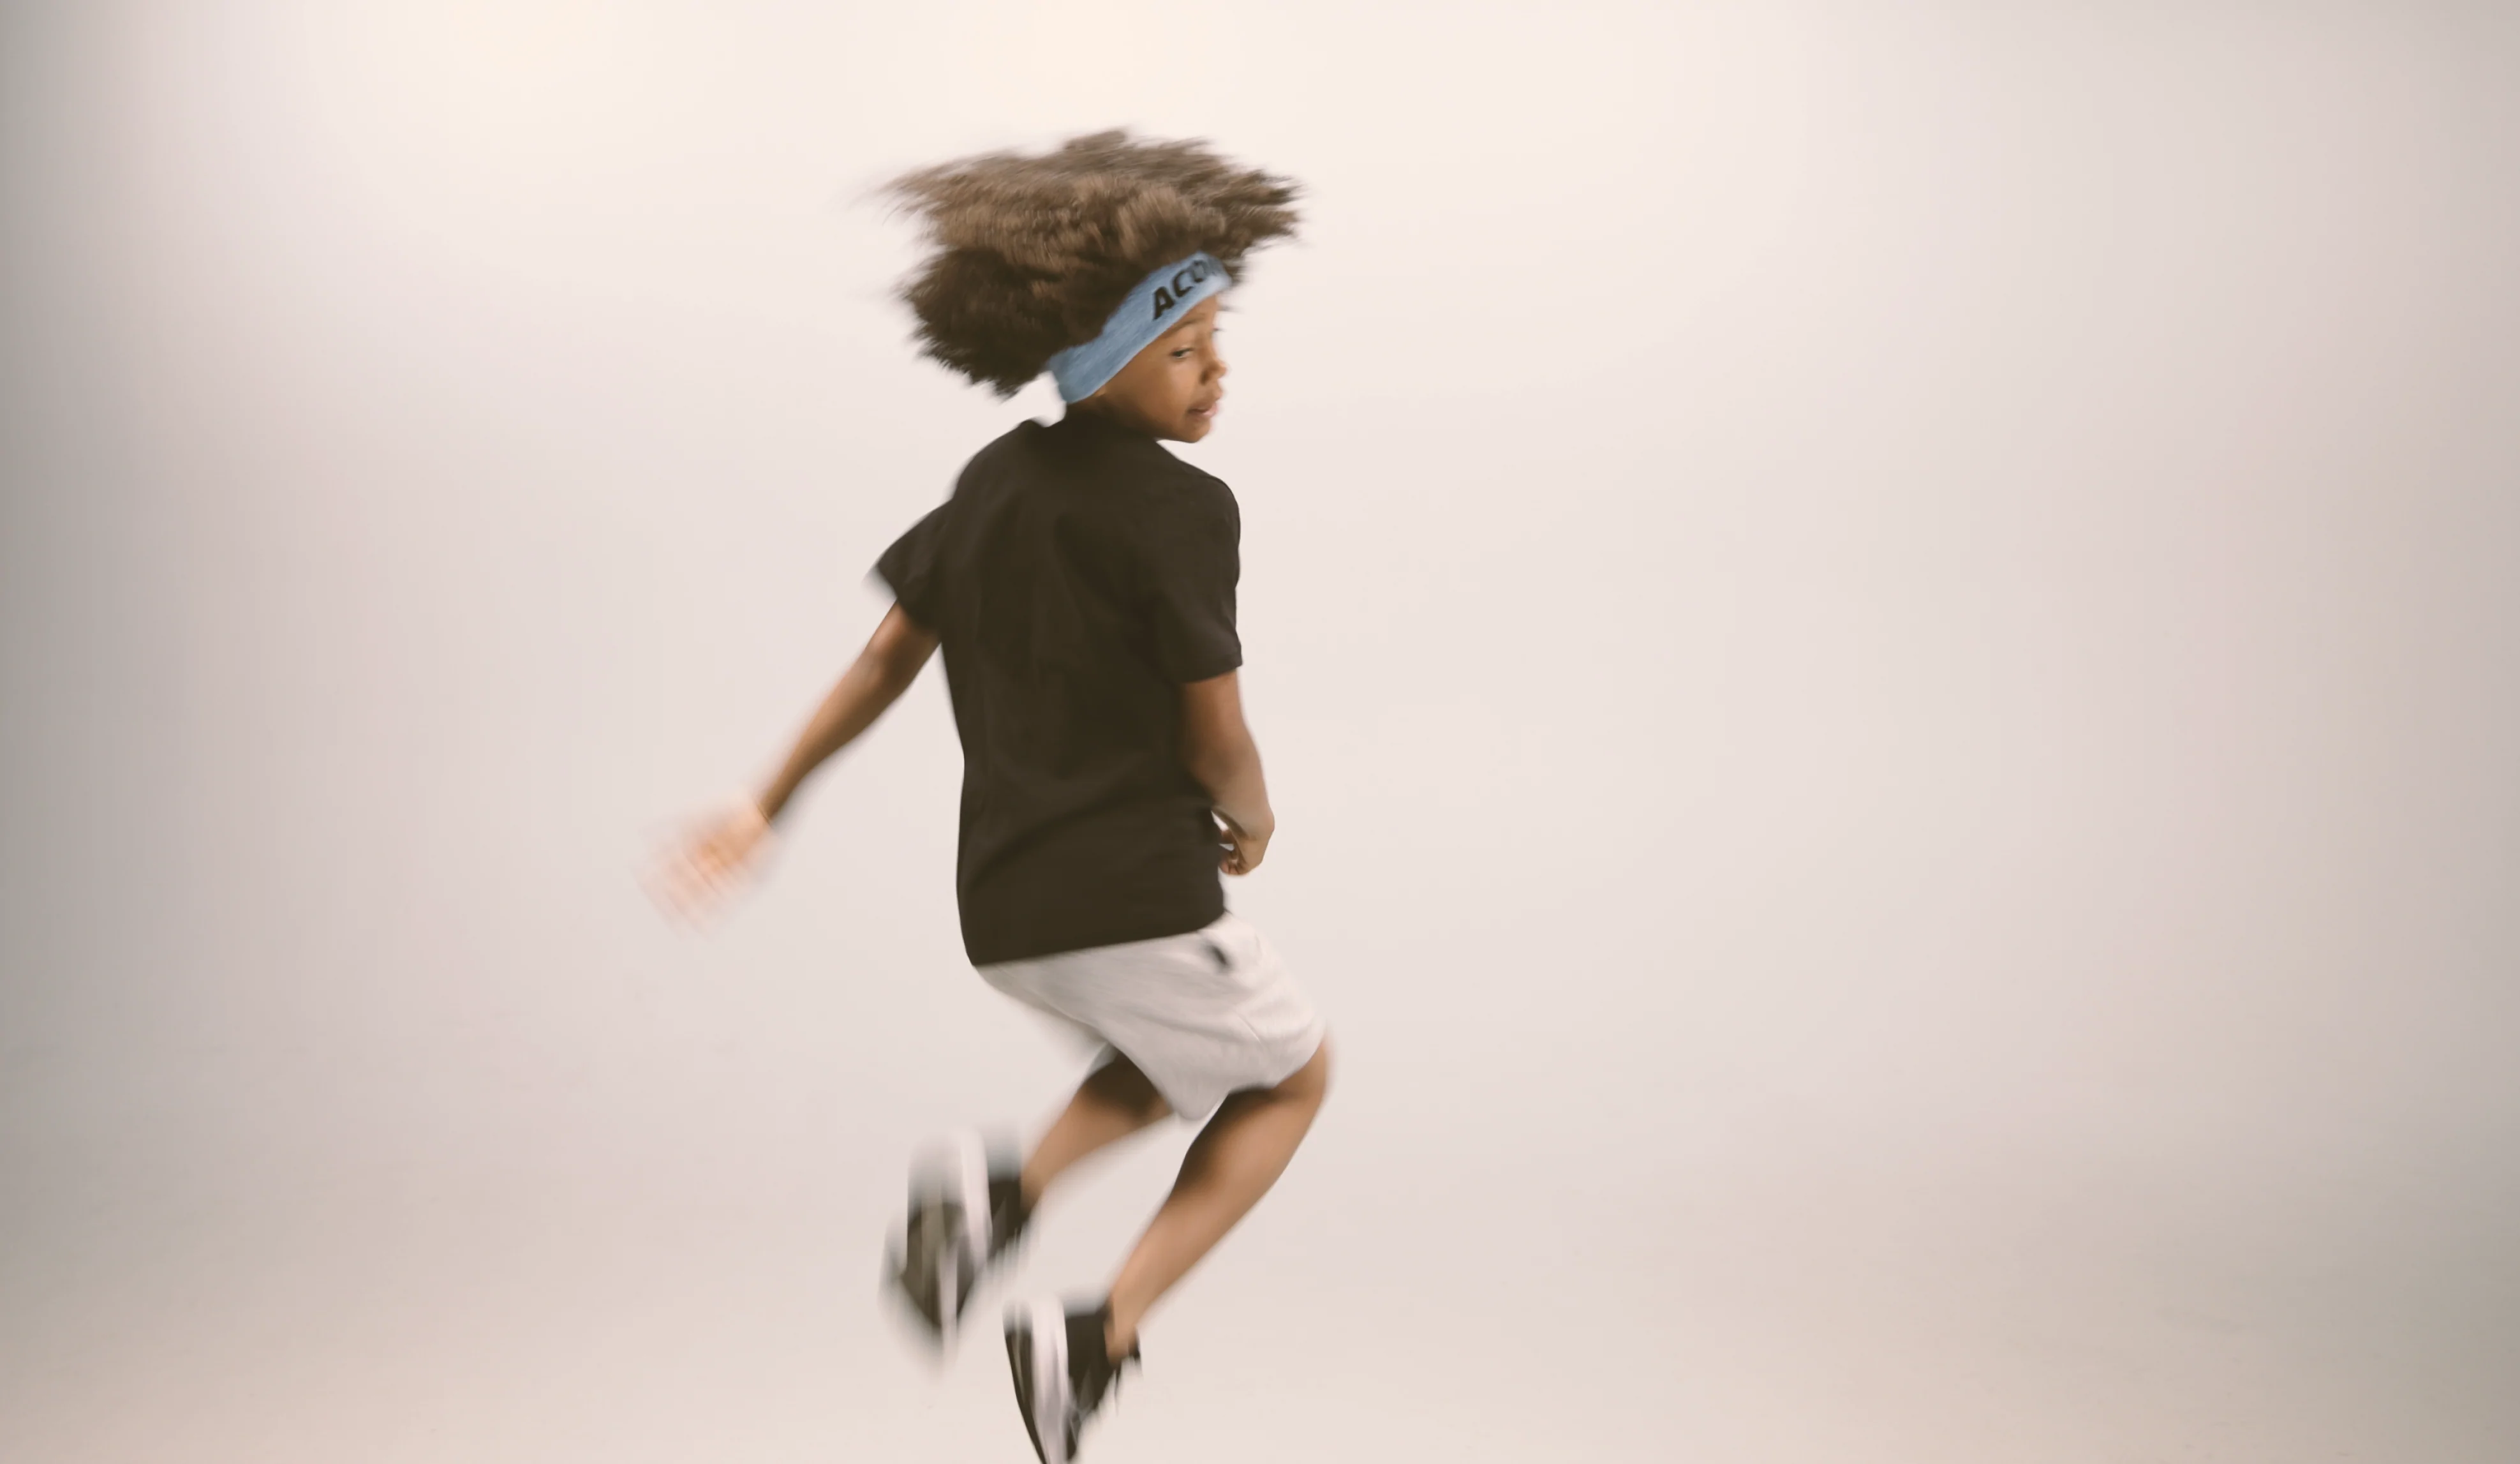 Ett hoppande barn med Acon-pannband, svart T-shirt, vita shorts och sneakers. Bilden är tagen mot beige bakgrund 